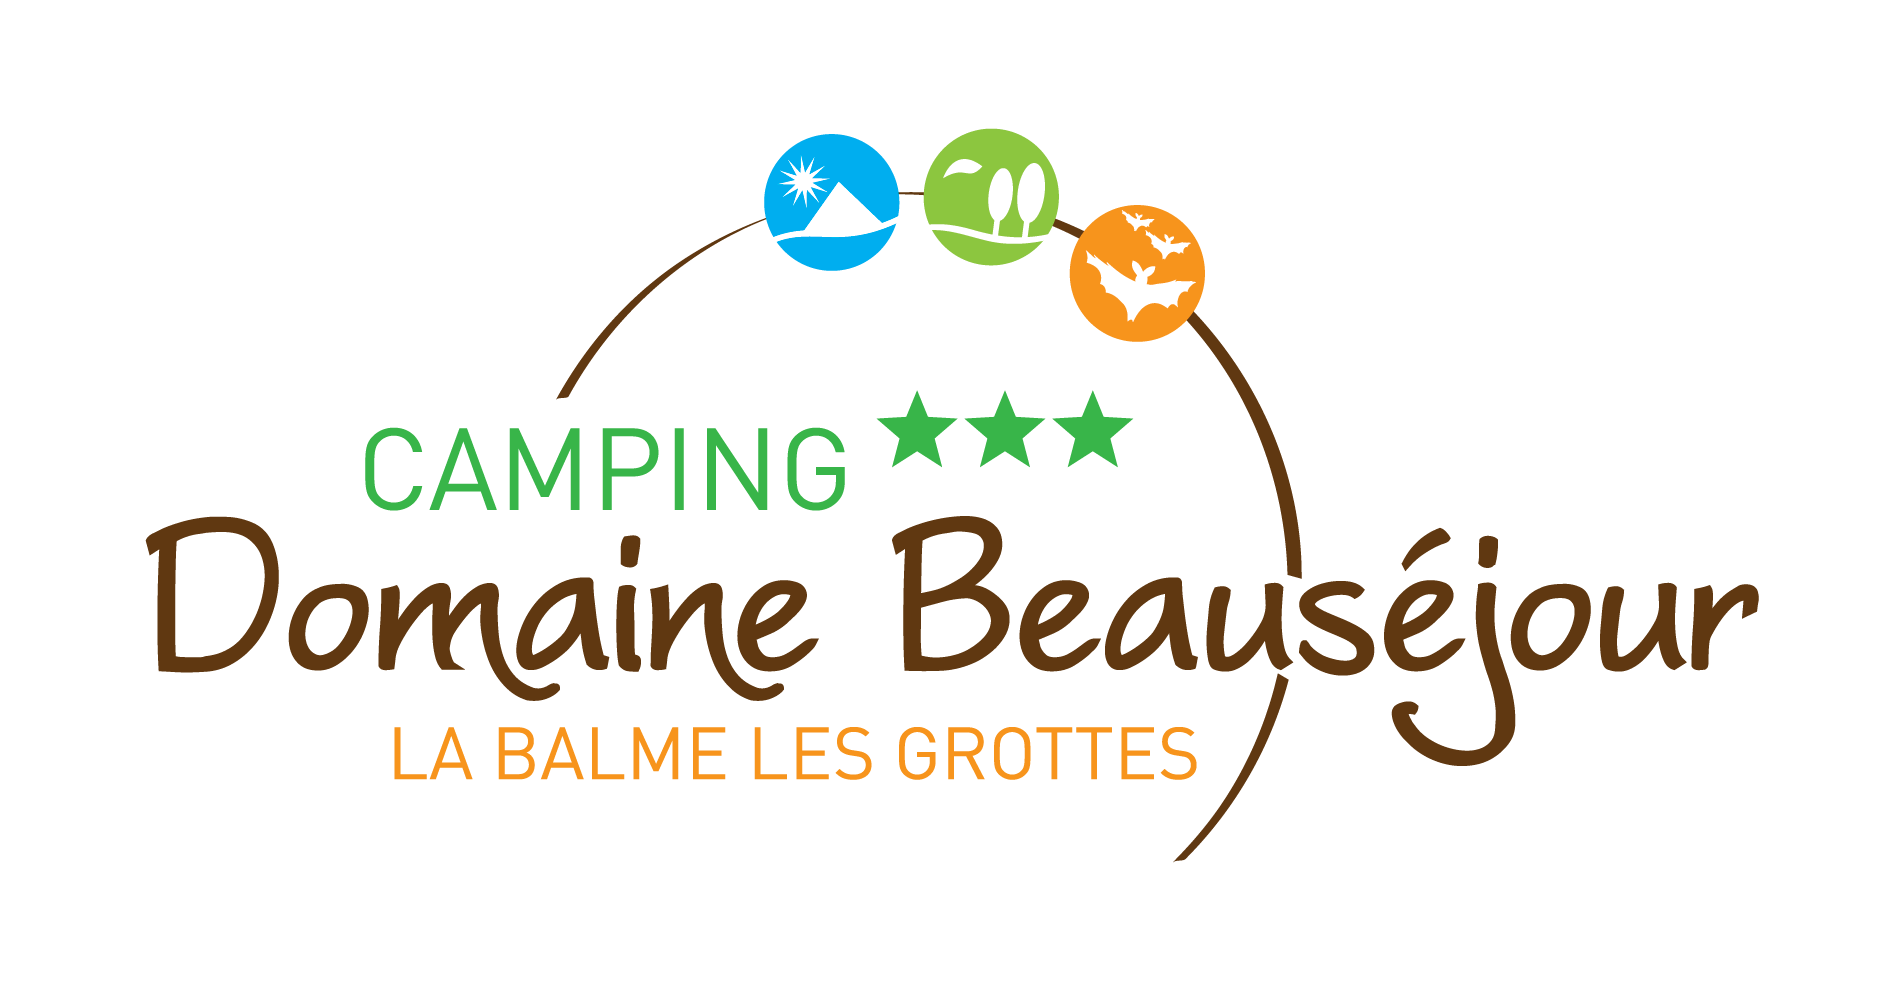 Eigenaar Camping Domaine Beauséjour - La Balme Les Grottes